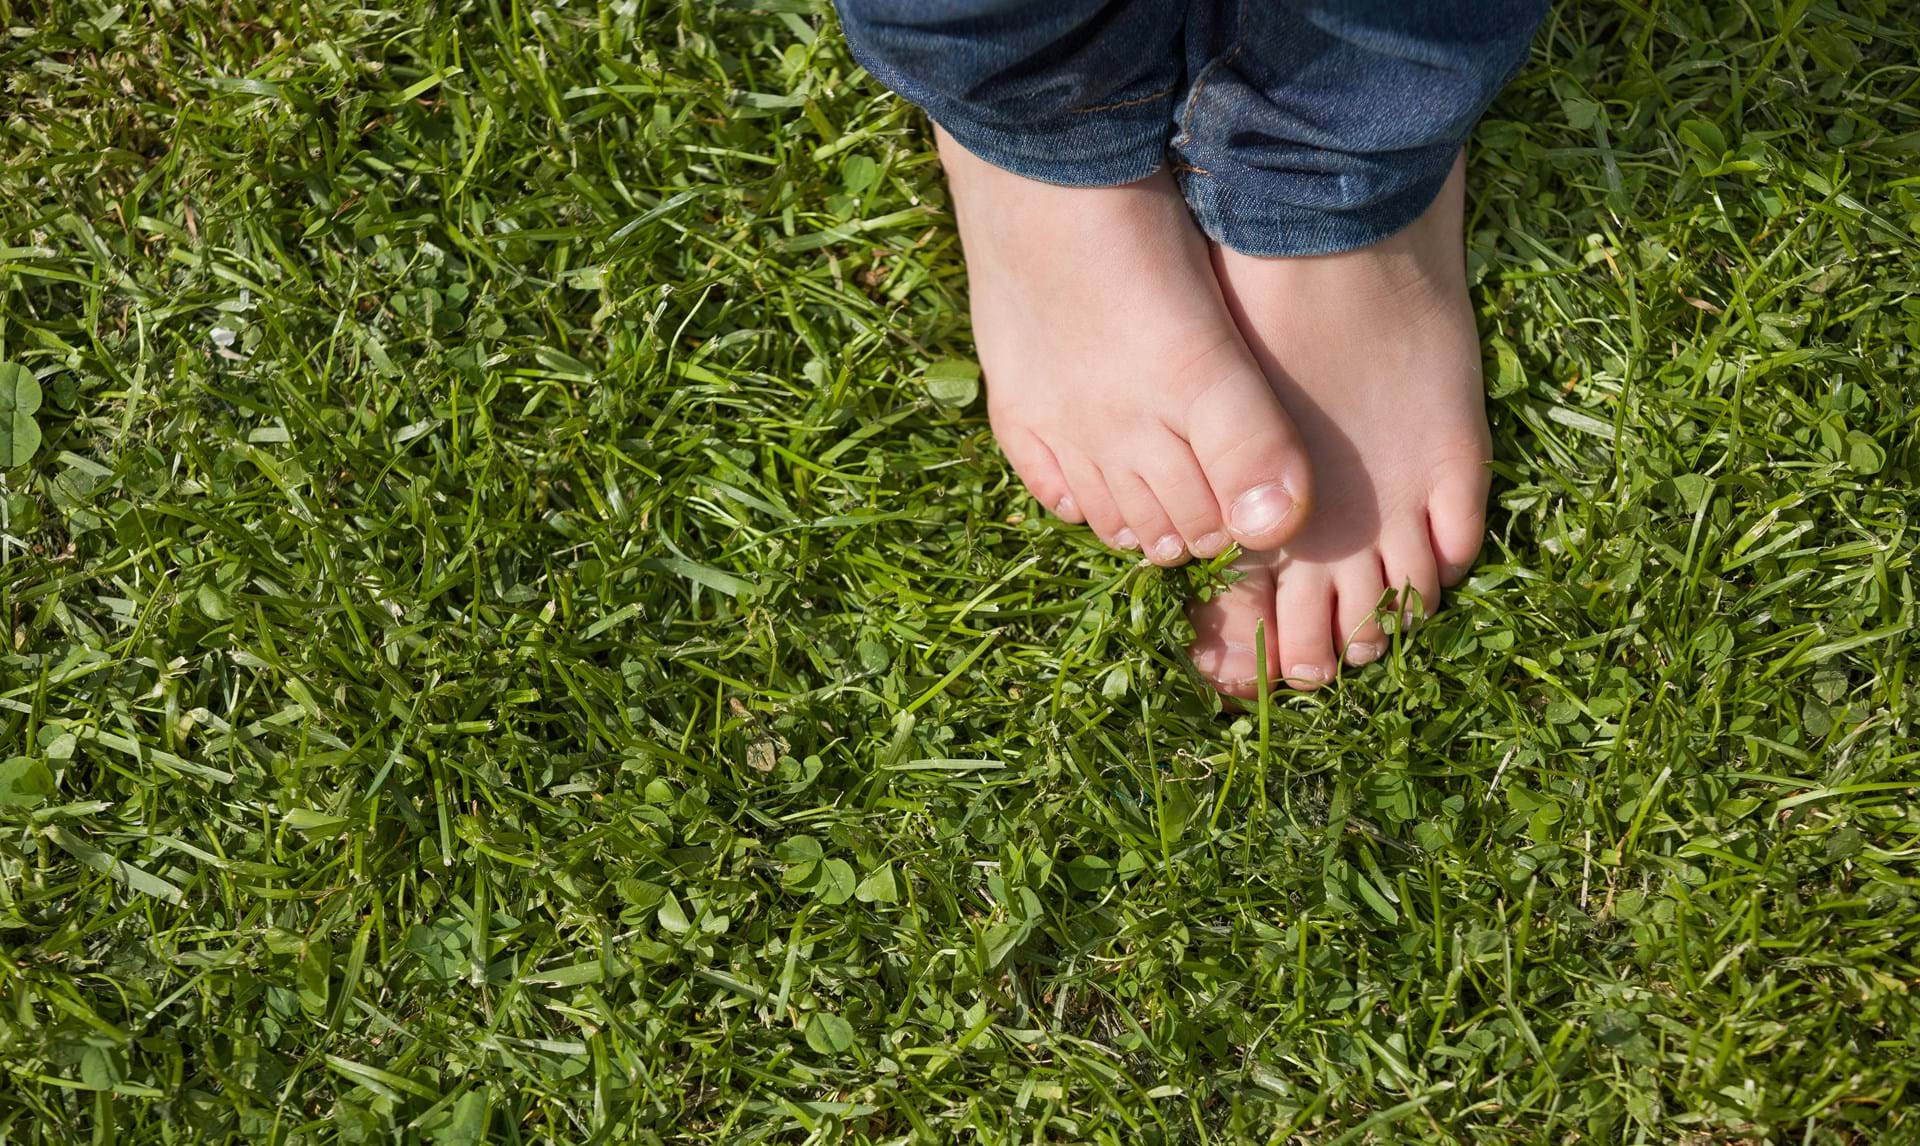 Босые ноги баста jakone. Детские босые ноги на траве. Дети на траве вид сверху. Босые ноги вид сверху. Пятки детей на траве.